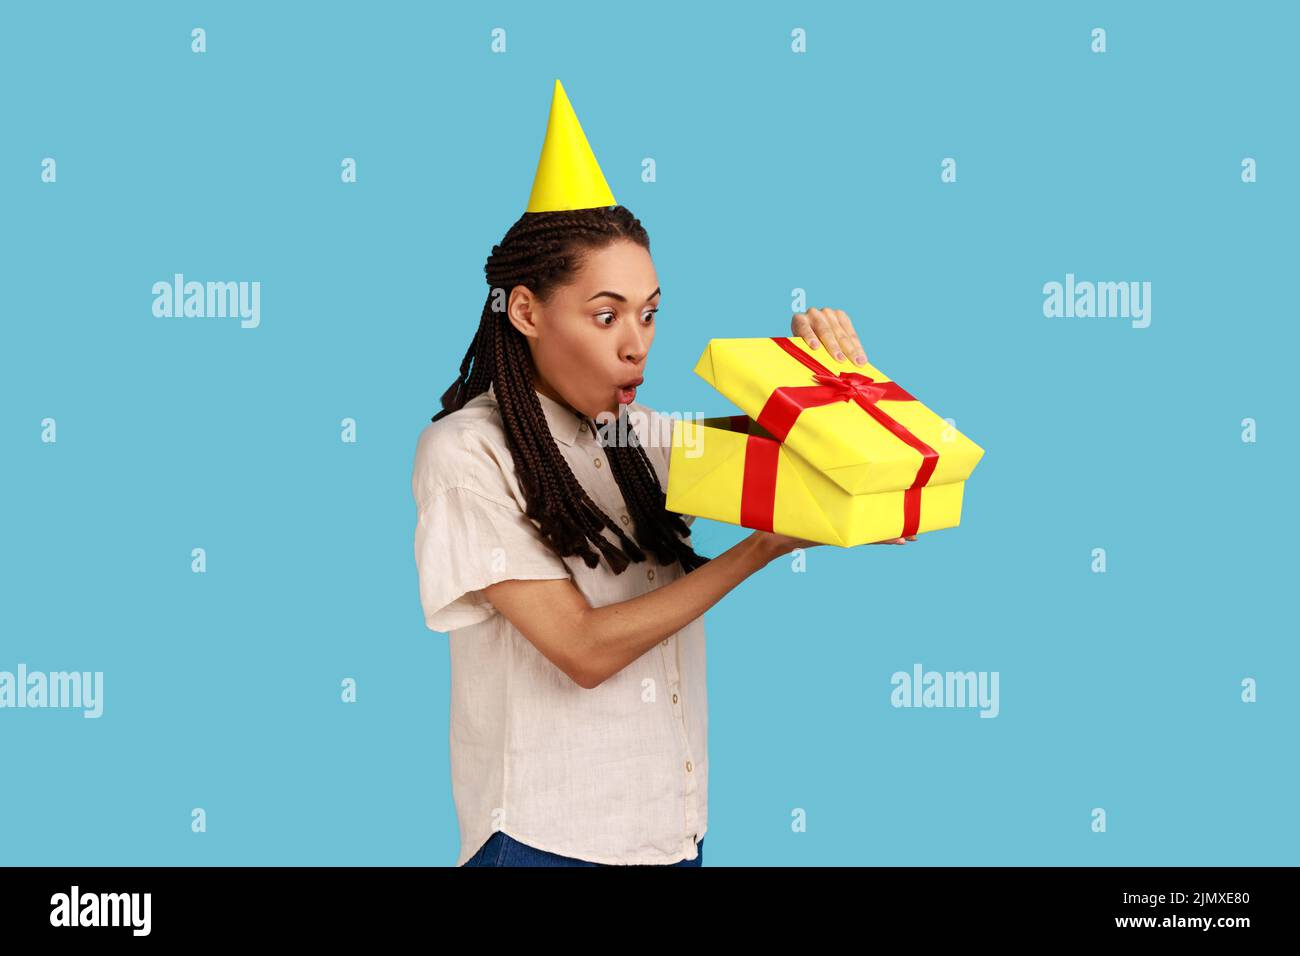 Porträt einer überraschten Frau in gelbem Partykegel, die in die Geschenkbox schaut, das Geschenk öffnet und mit schockierter Ausstrahlung in das Innere blickt, das weißes Hemd trägt. Innenaufnahme des Studios isoliert auf blauem Hintergrund. Stockfoto